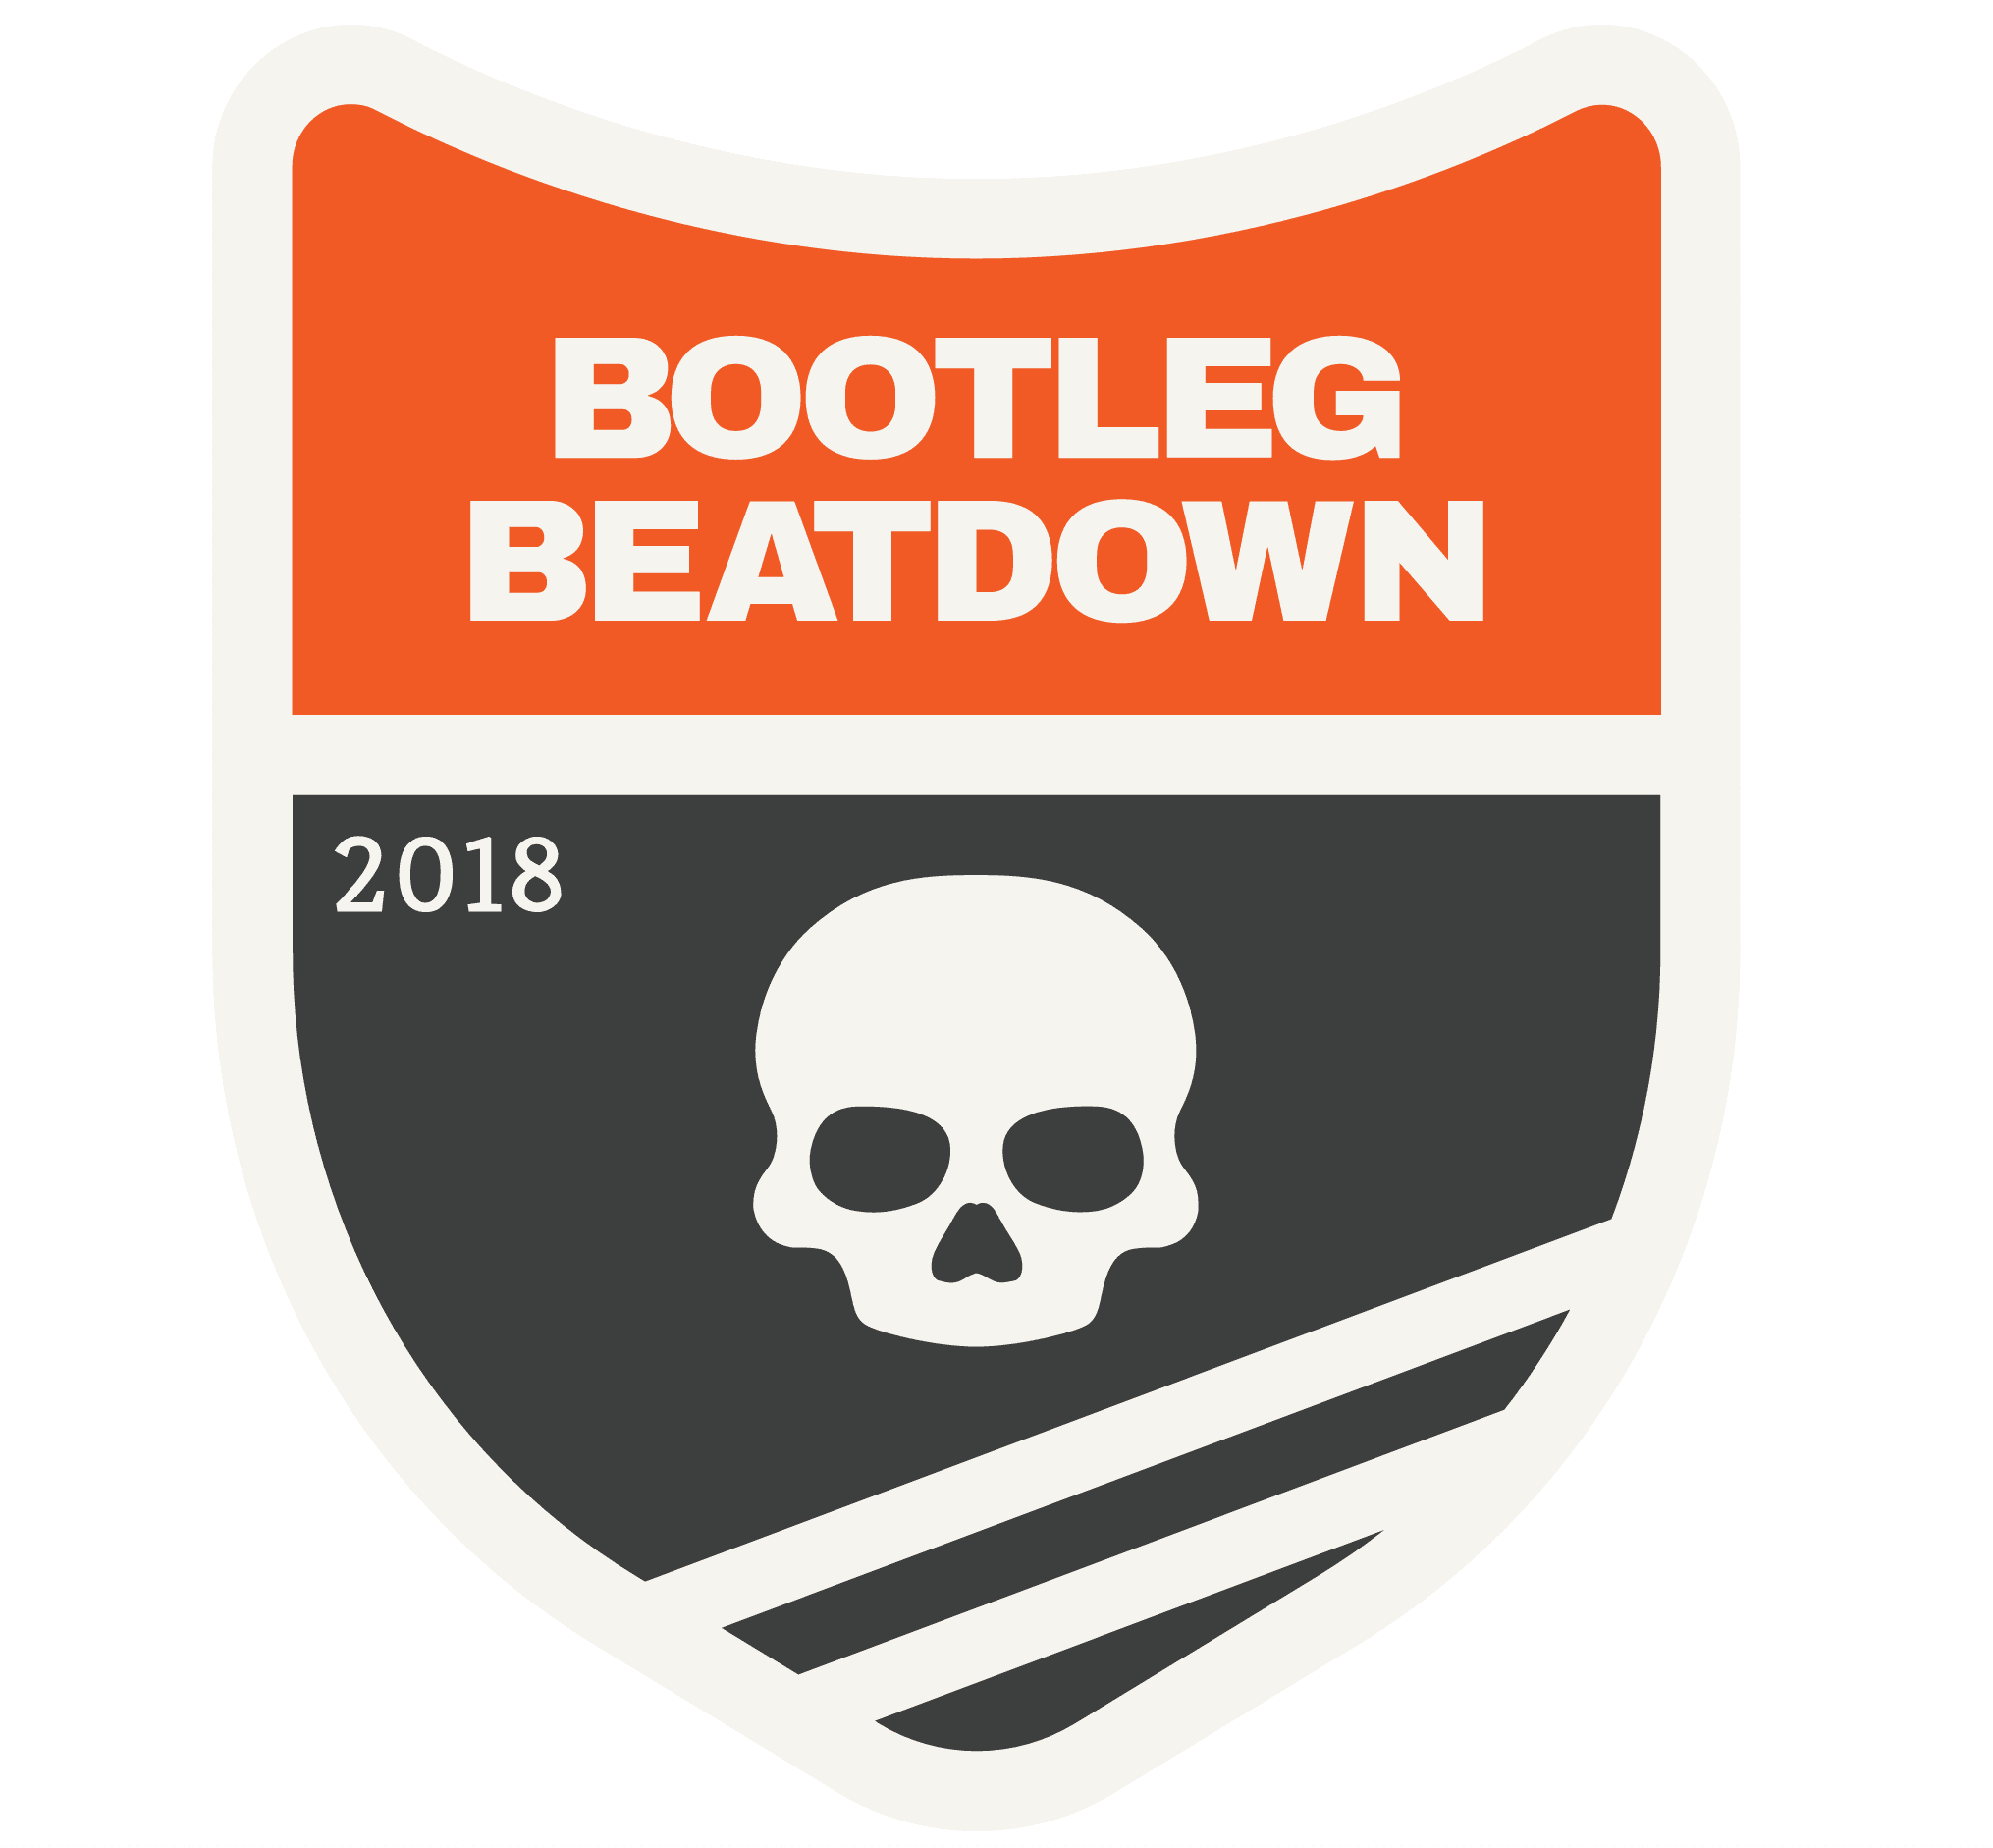 Bootleg Beatdown logo on RaceRaves